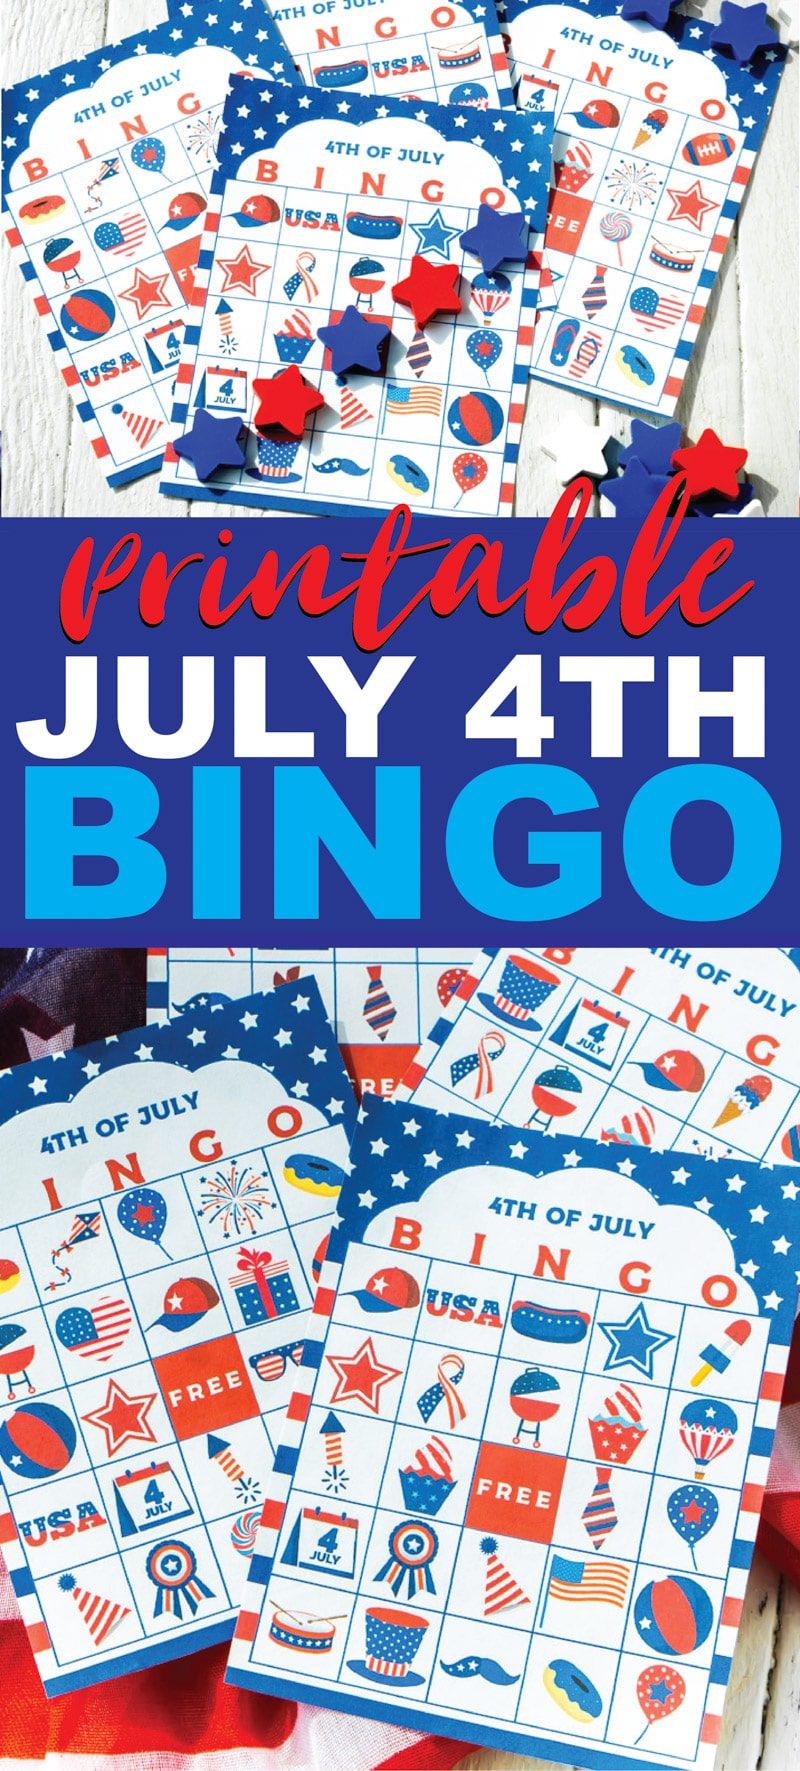 Αυτό το παιχνίδι bingo της 4ης Ιουλίου είναι ιδανικό για παιδιά, για ενήλικες ή για έφηβους για να παίξουν περιμένοντας τα πυροτεχνήματα! Απλή εκτύπωση των δωρεάν εκτυπώσιμων καρτών, μοιράστε τους δείκτες και ξεκινήστε να παίζετε! Μία από τις καλύτερες δραστηριότητες για εσωτερικούς ή εξωτερικούς χώρους!